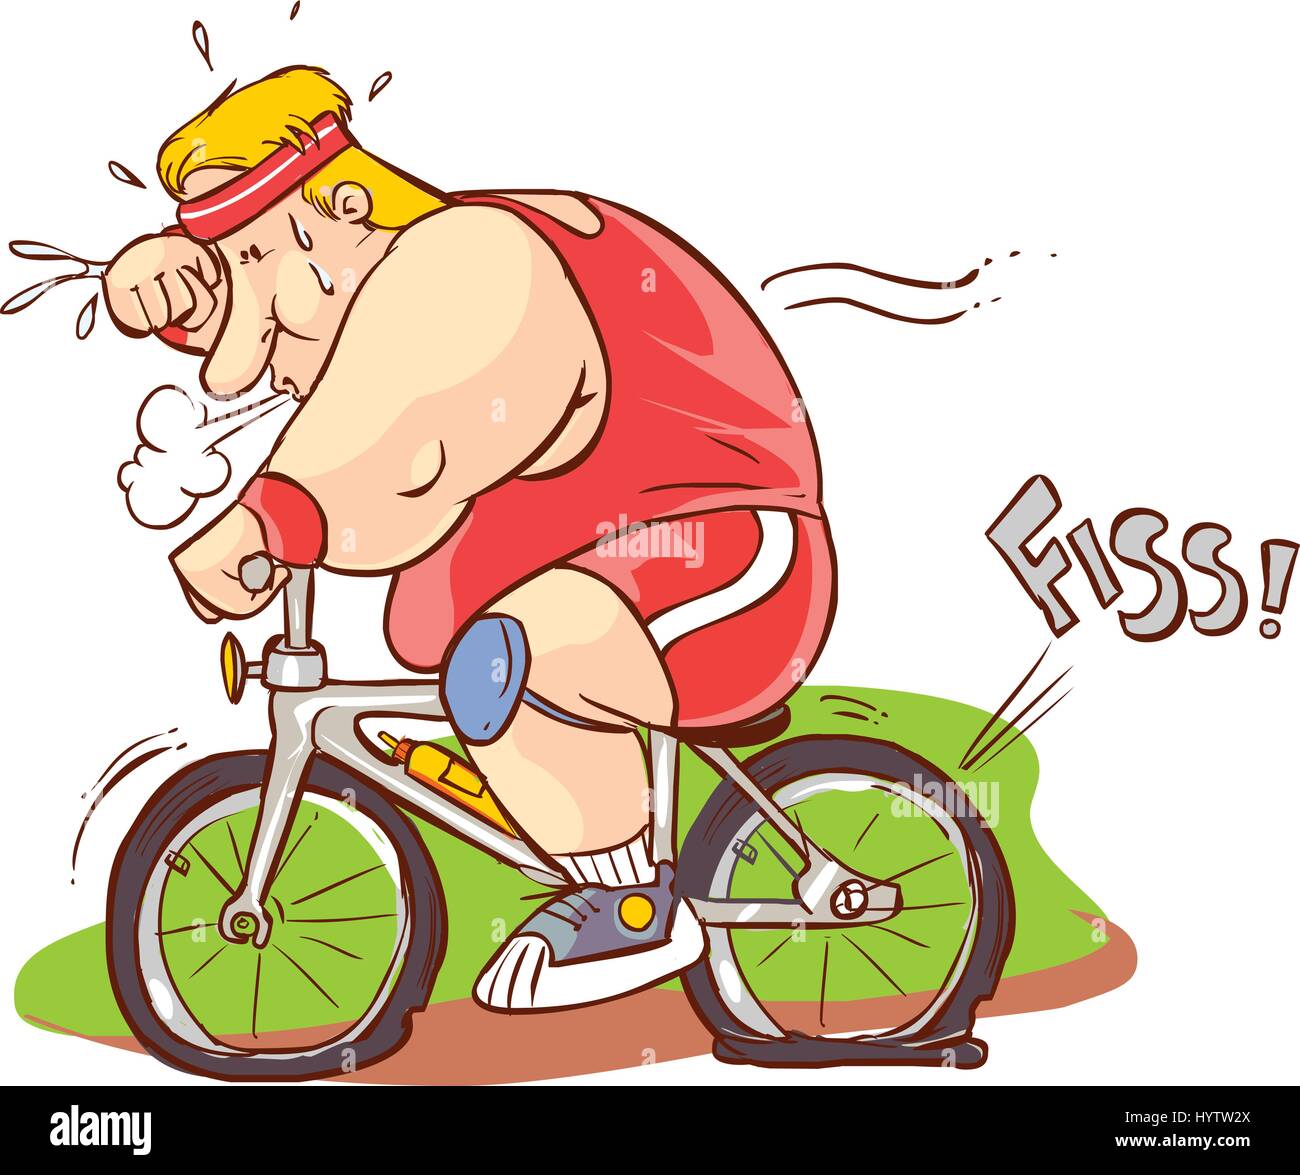 https://c8.alamy.com/compit/hytw2x/illustrazione-vettoriale-di-uomo-grasso-in-sella-ad-una-bicicletta-hytw2x.jpg